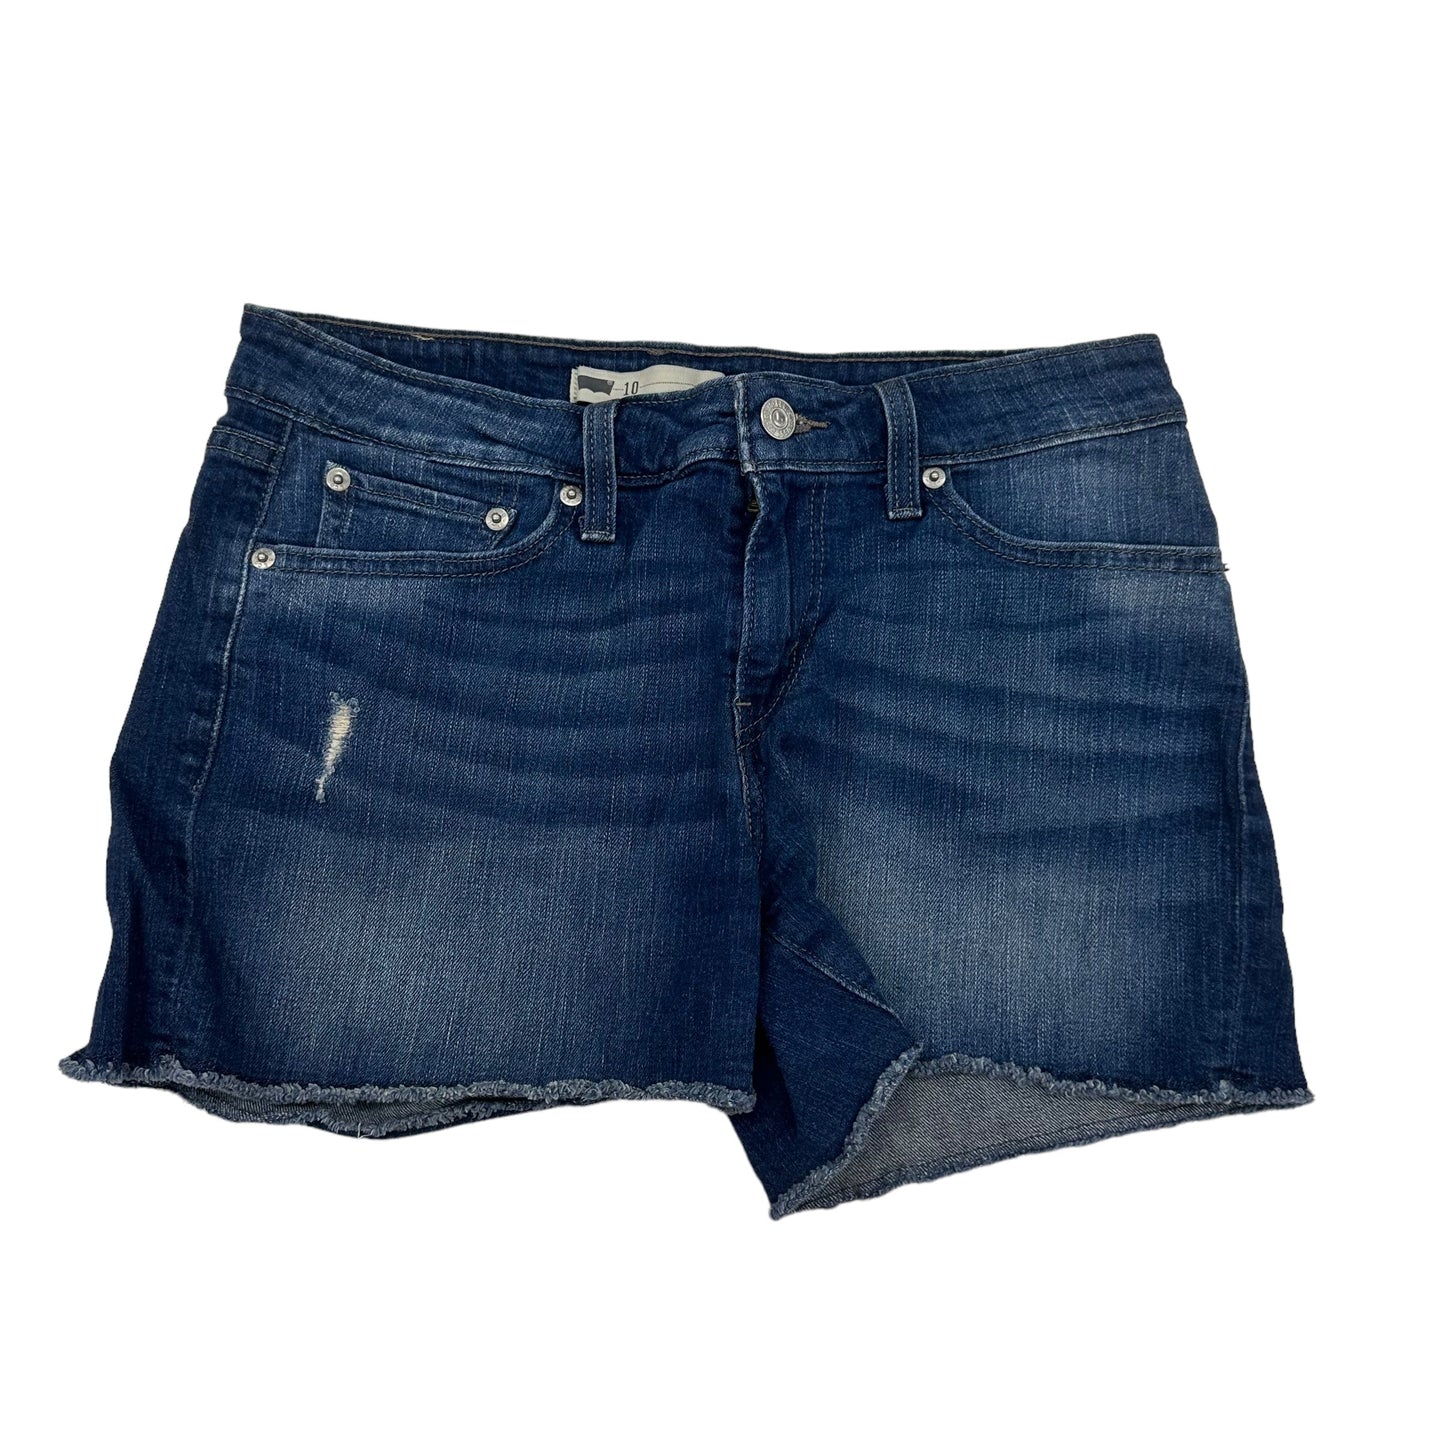 Blue Denim Shorts Levis, Size 10